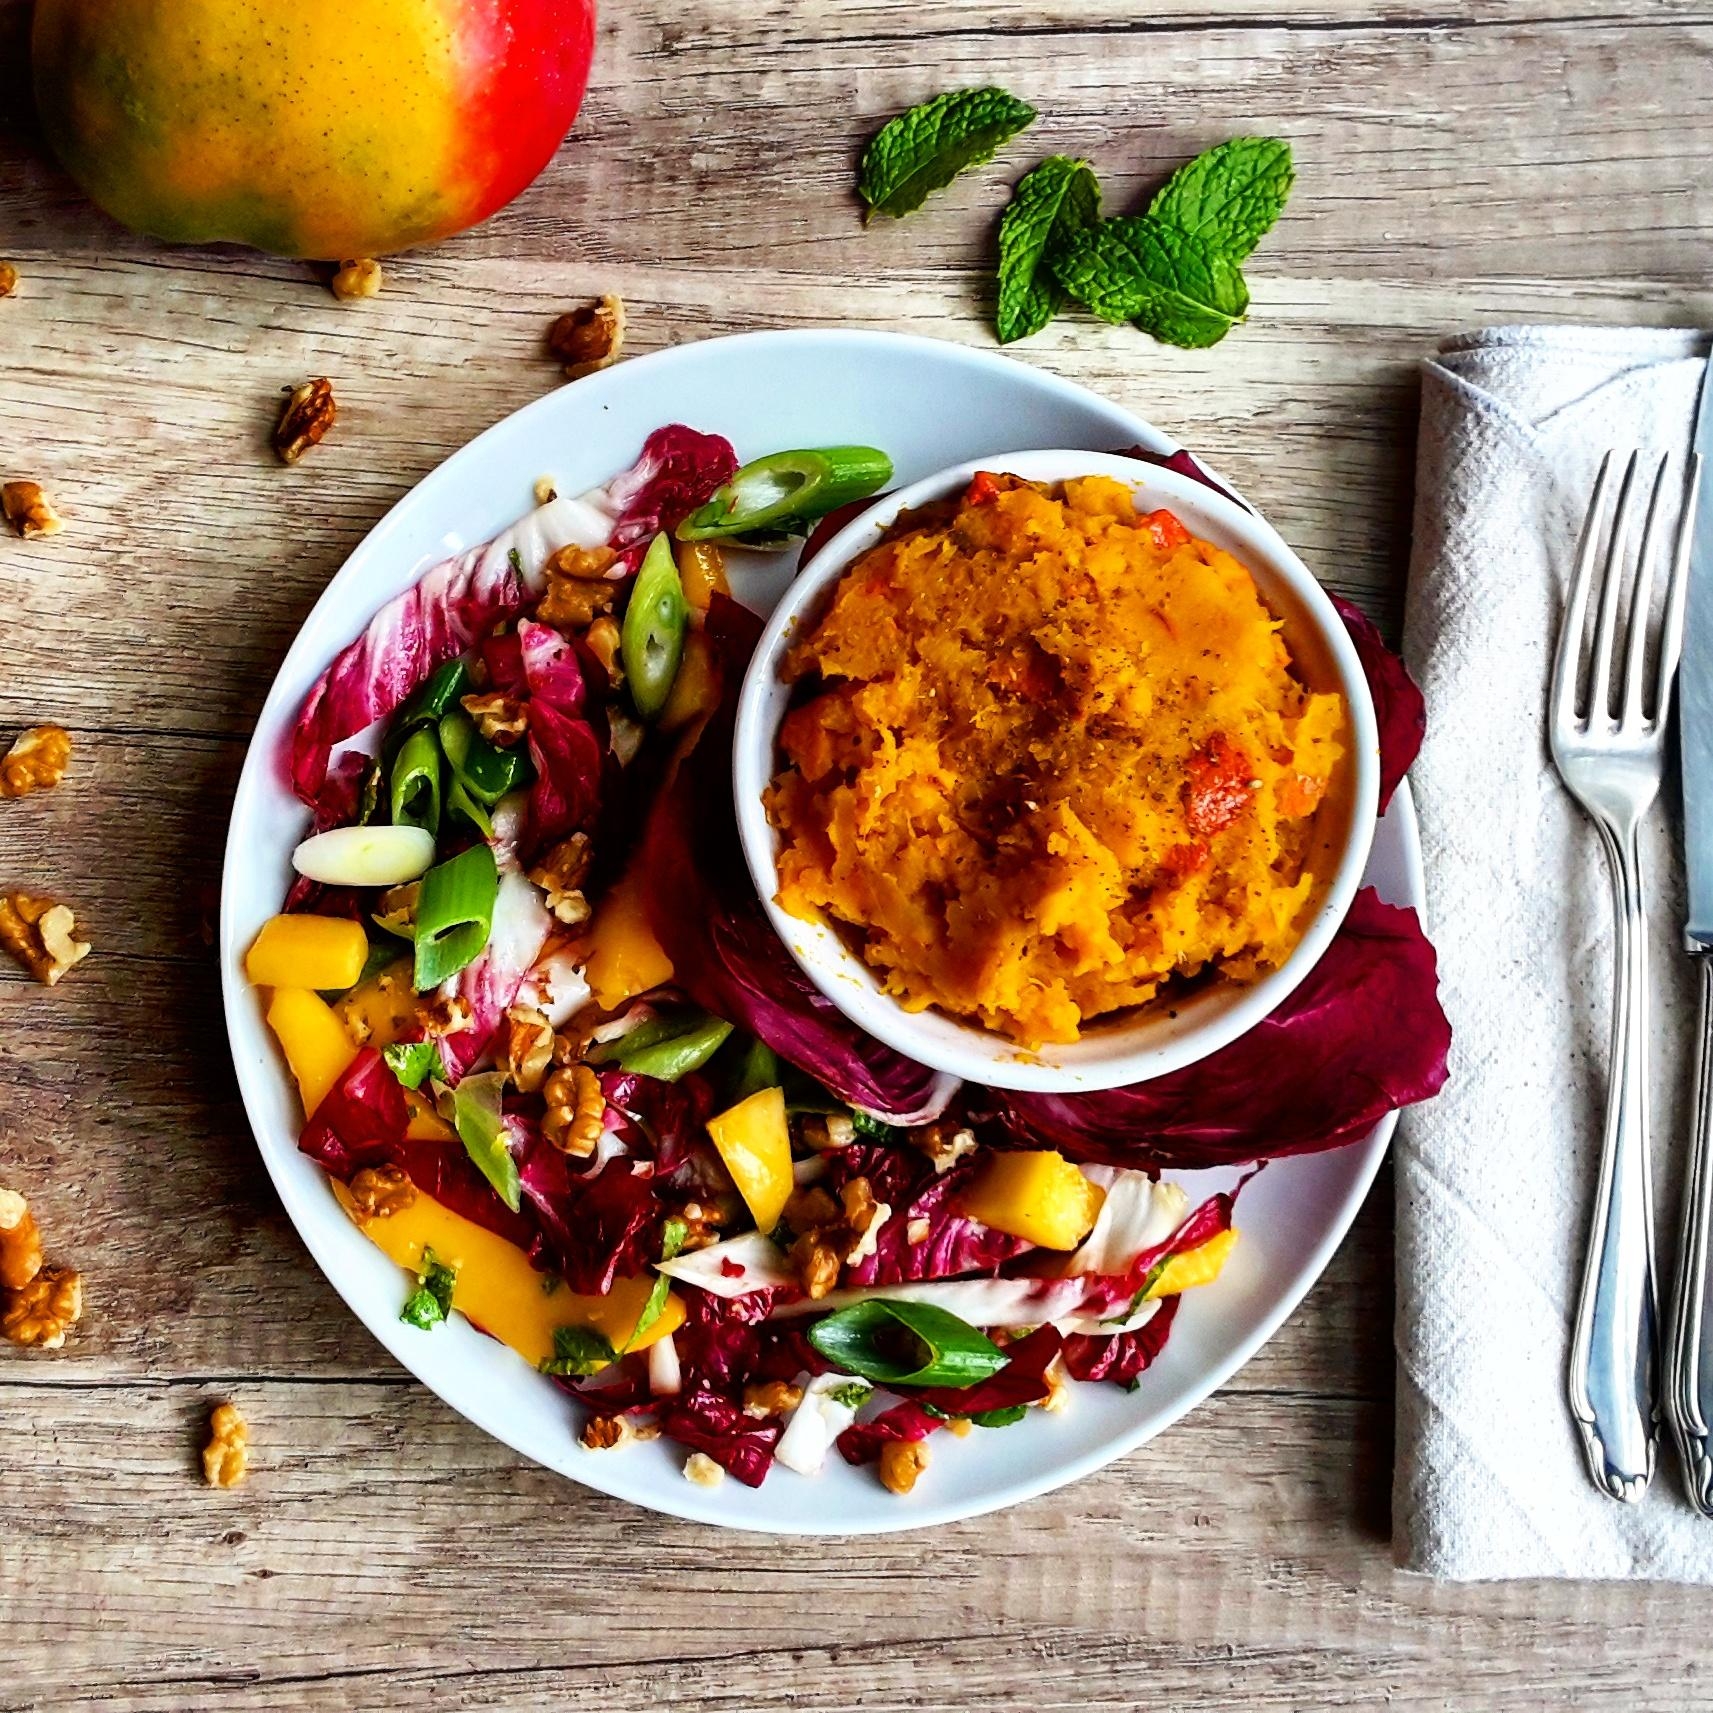 Herbst-Throwback mit Mango-Radicchio-Salat und Süßkartoffelstampf #foodchallenge #foodie